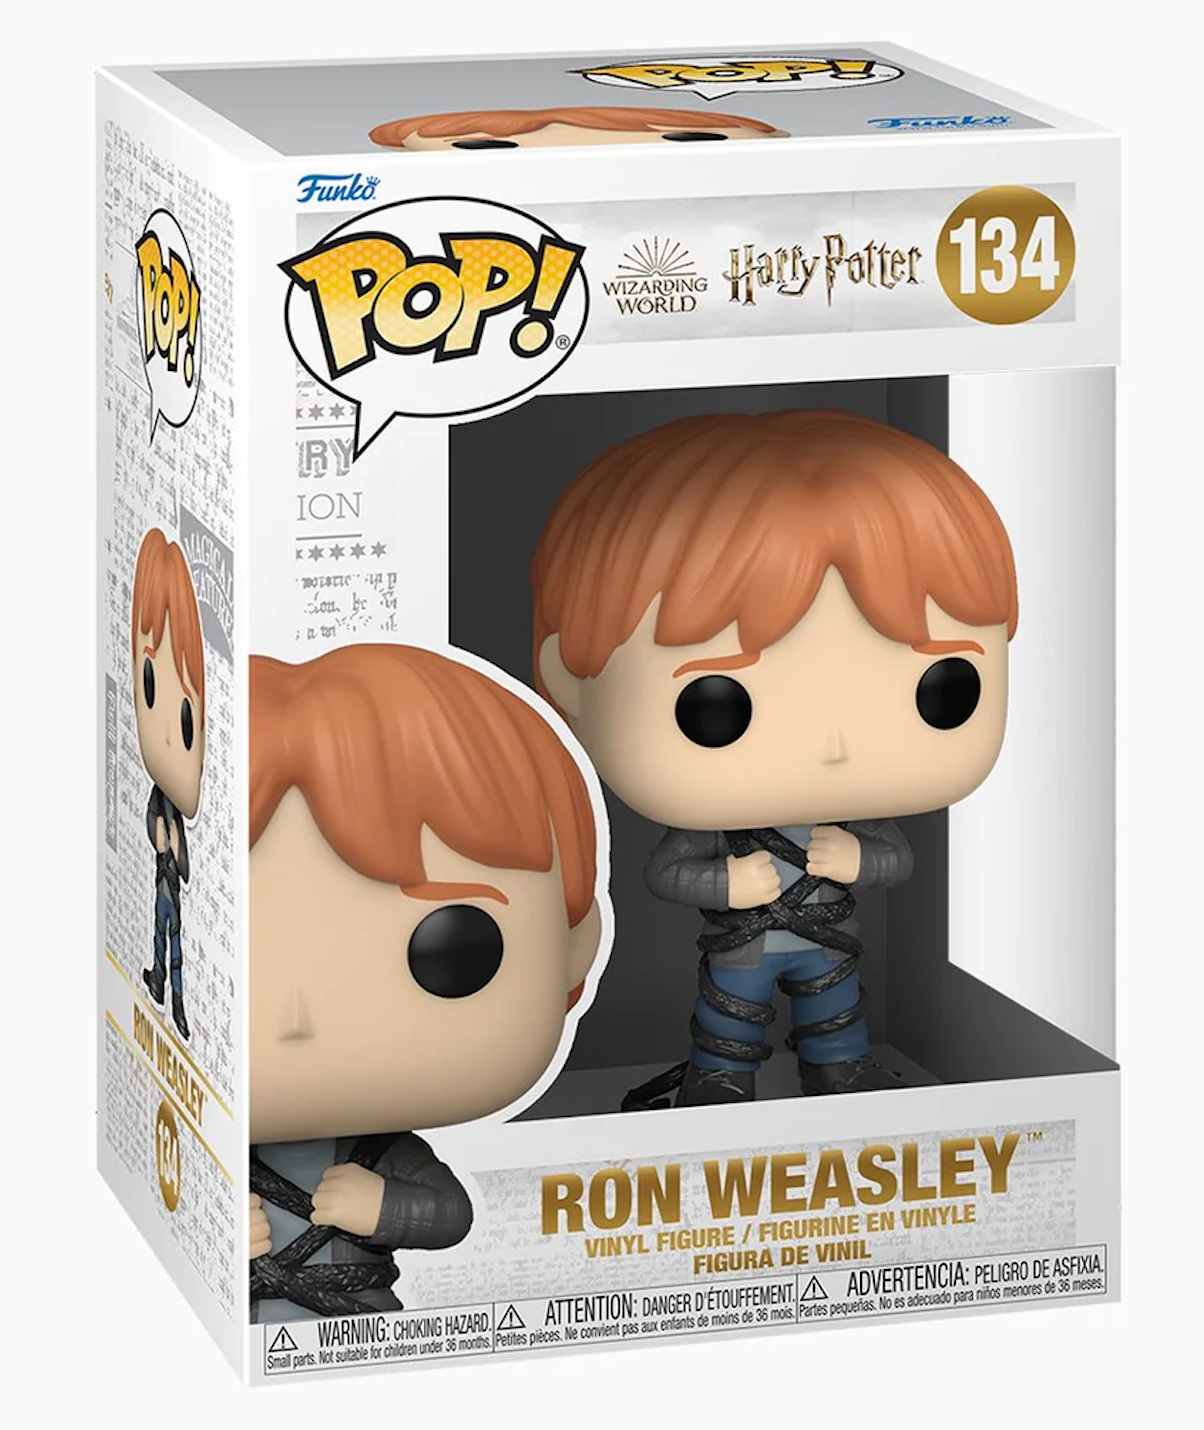 Harry Potter: Ron Weasley Pop! Vinyl Figure (134)